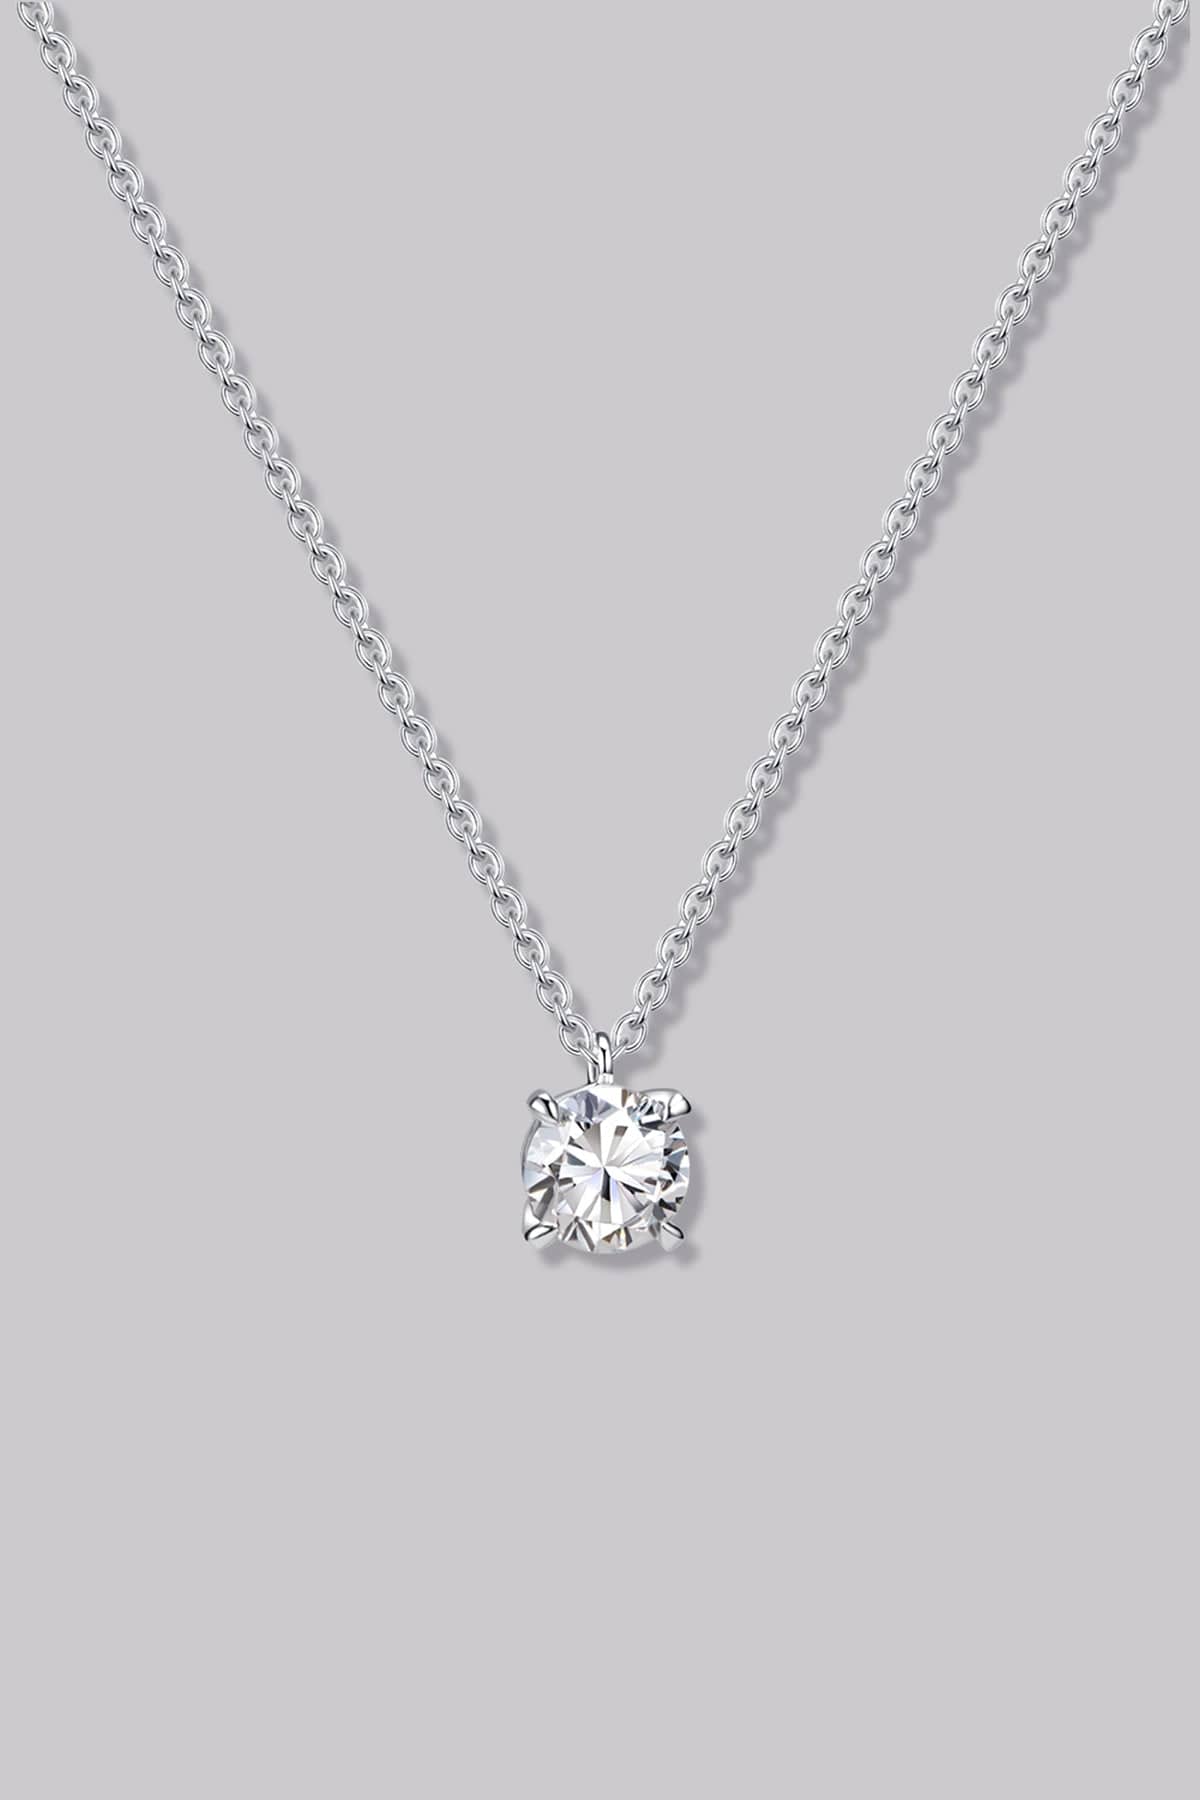 Solitaire Round Diamond Necklace (0.50ct) - APM Monaco